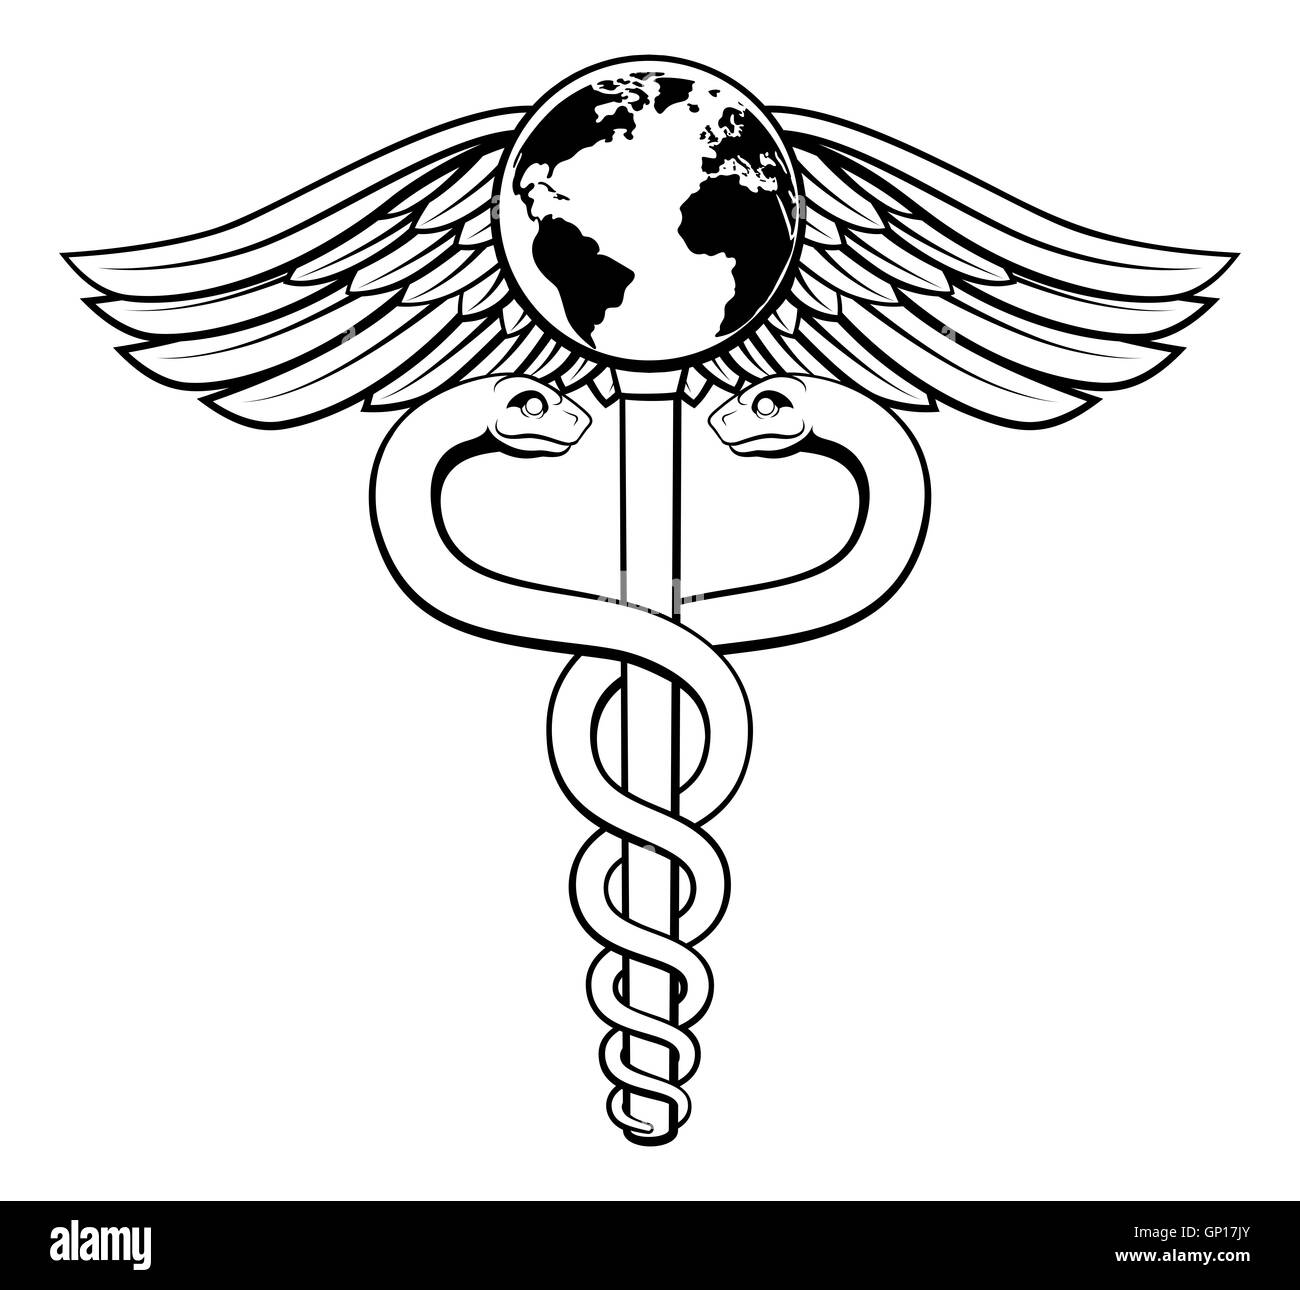 Ein Caduceus medizinischen Symbol Konzept einer medizinischen oder Herd Pflege-Ikone mit einem Globus Erde auf der Oberseite Stockfoto